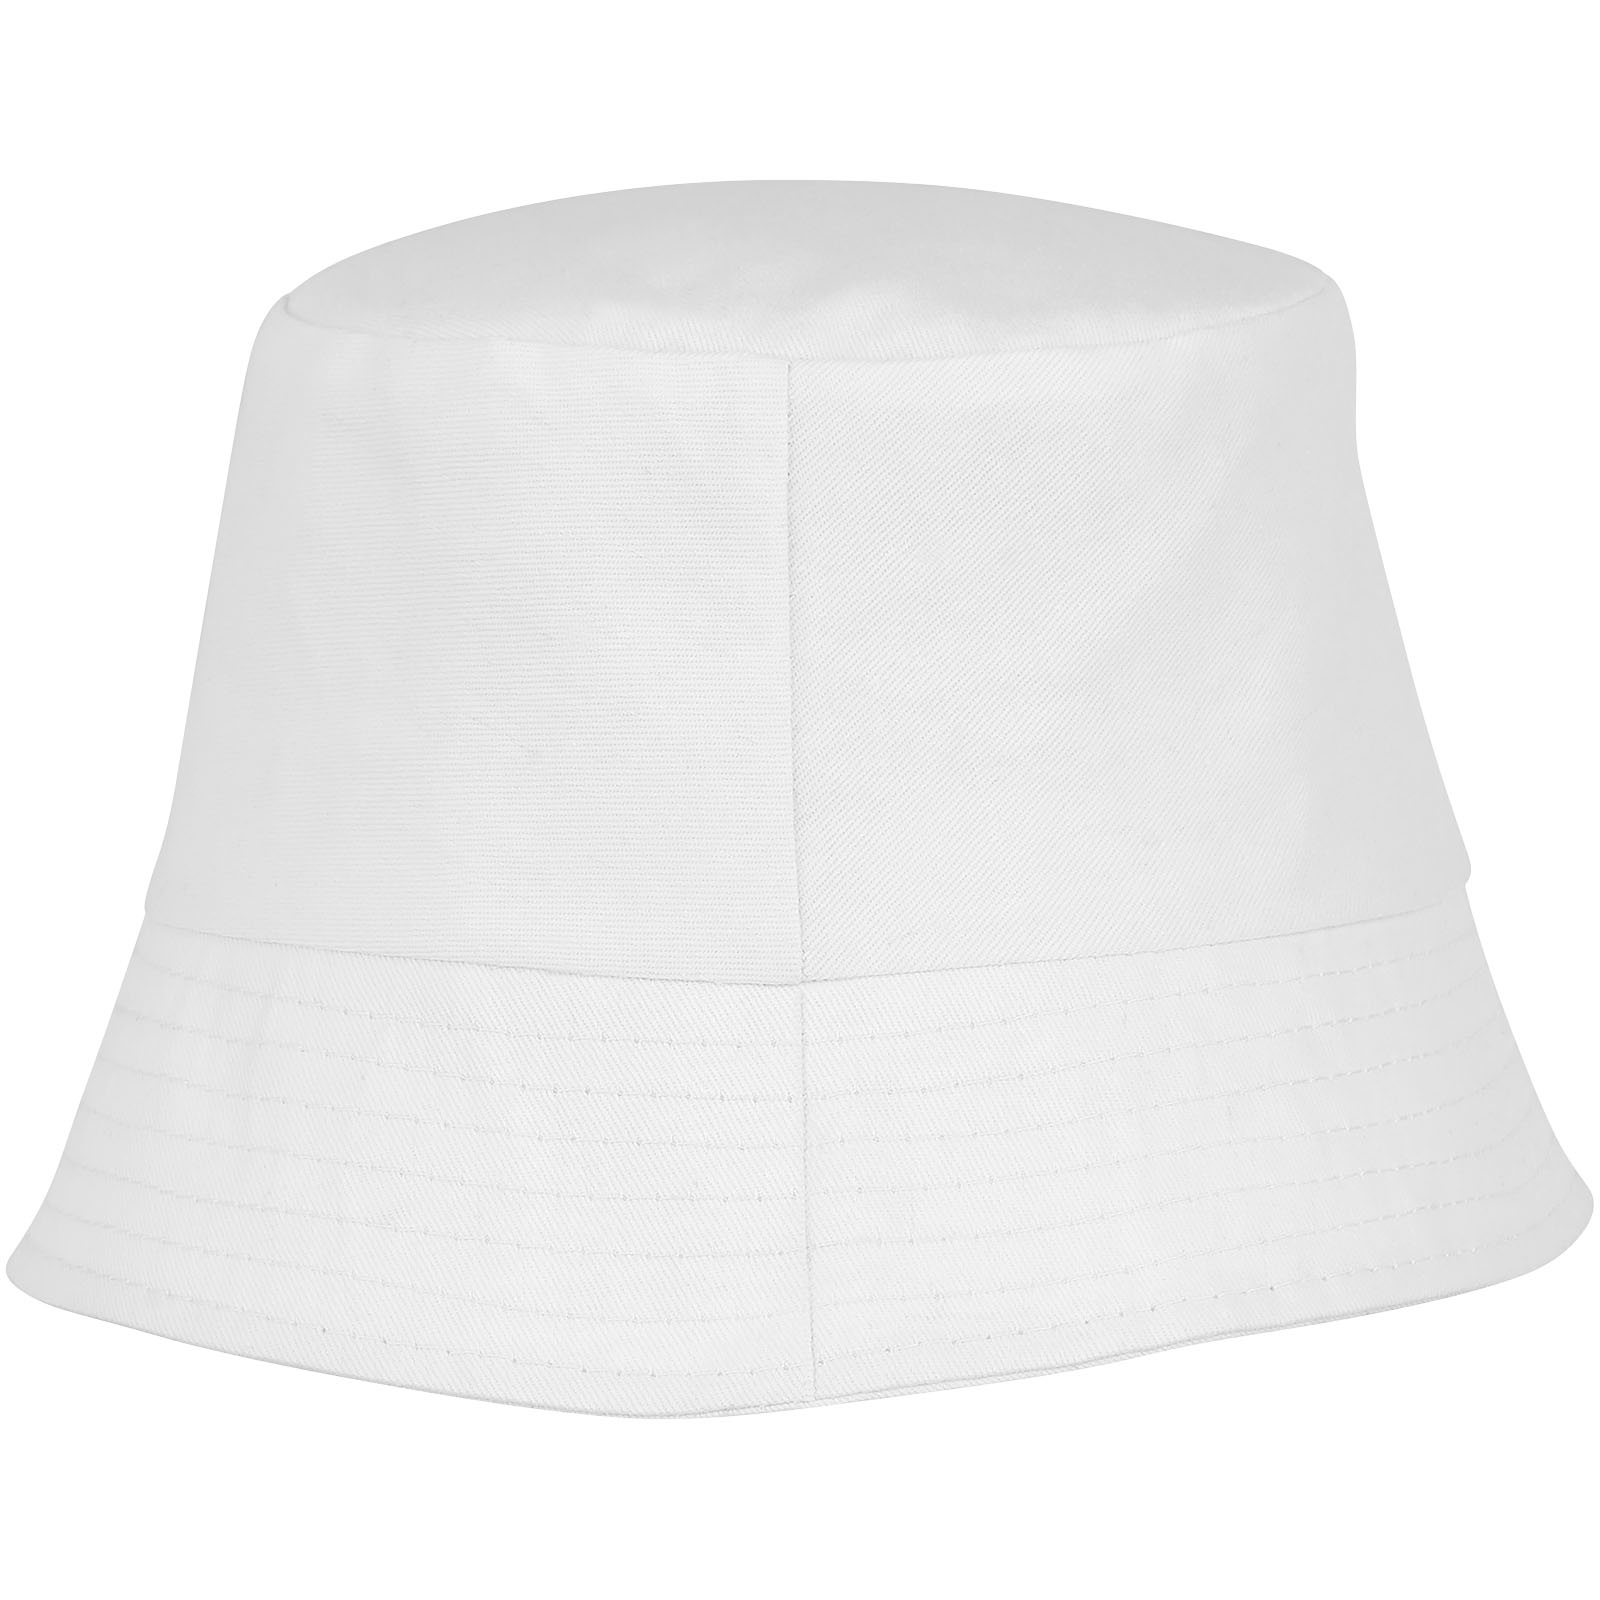 Advertising Caps & Hats - Solaris sun hat - 1